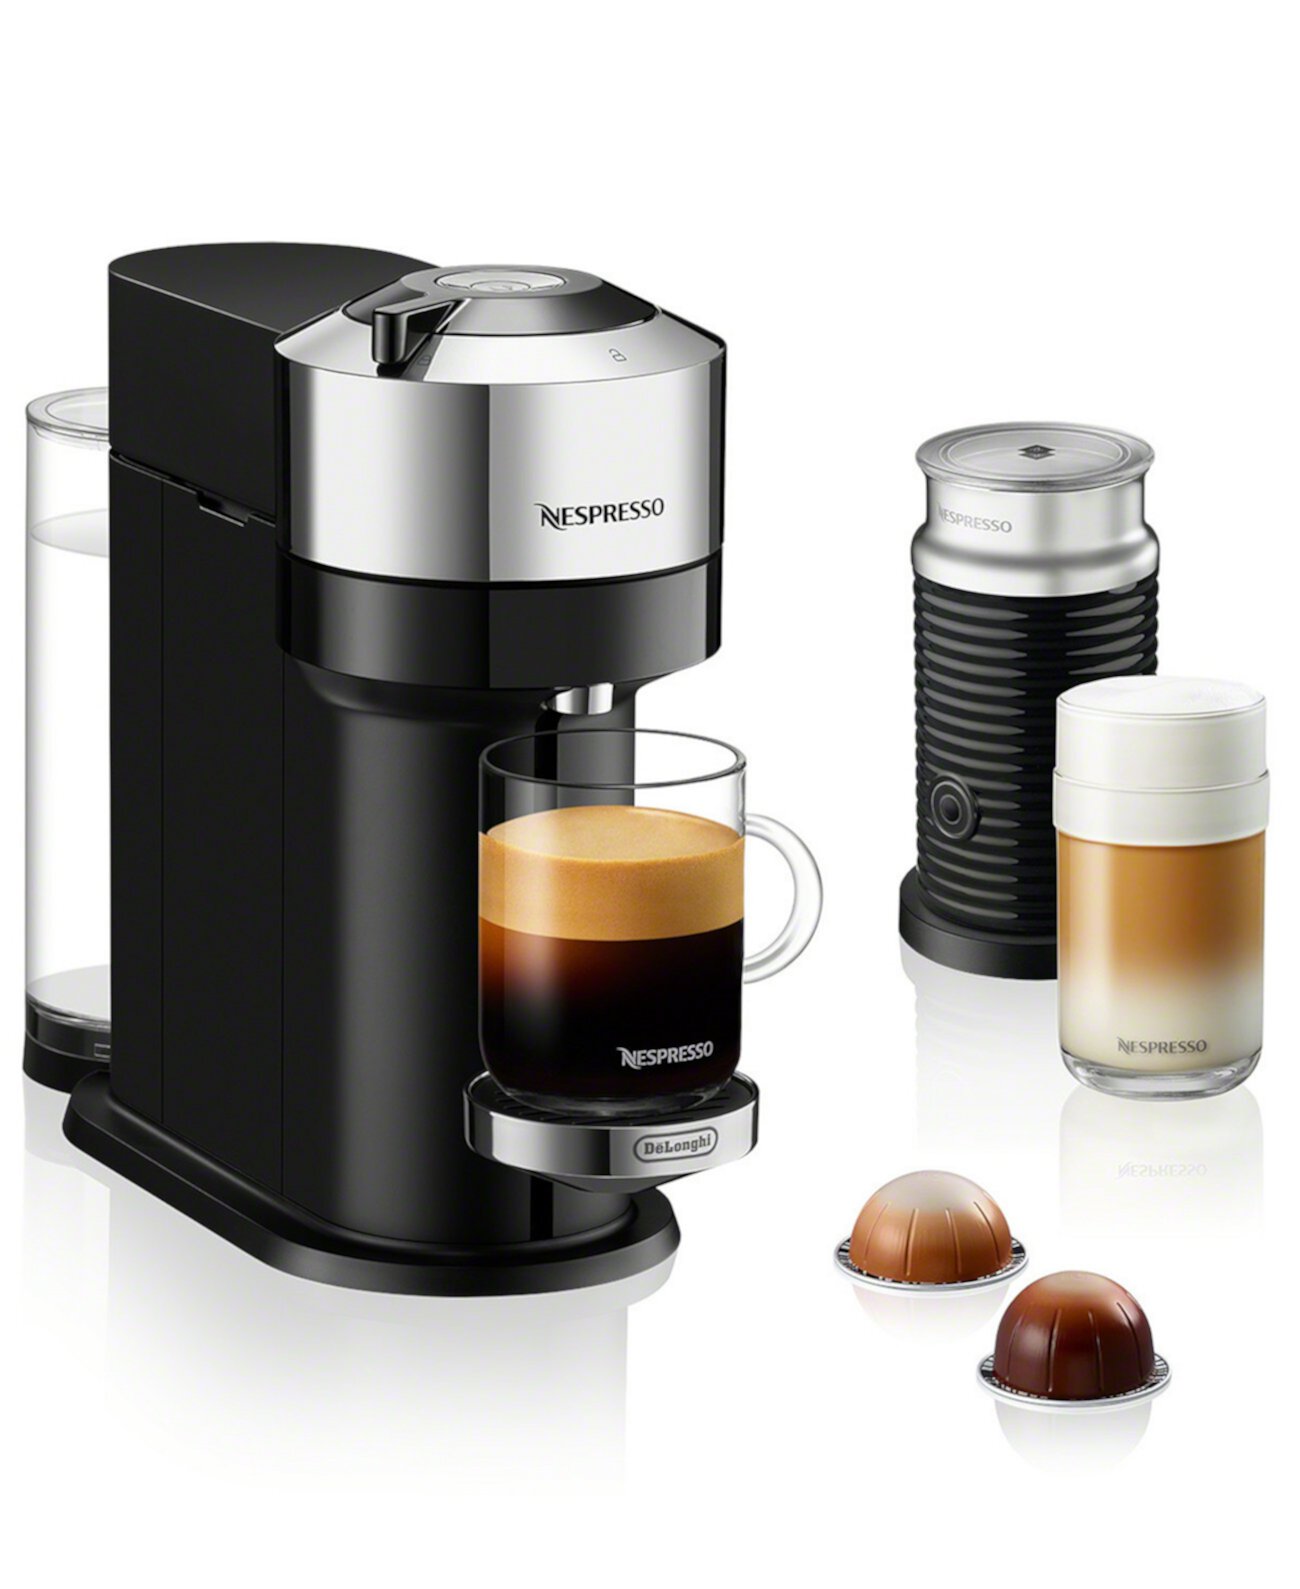 Кофемашина и эспрессо-машина Vertuo Next Deluxe от De'Longhi, хромированная, с насадкой для вспенивания молока Aeroccino Nespresso